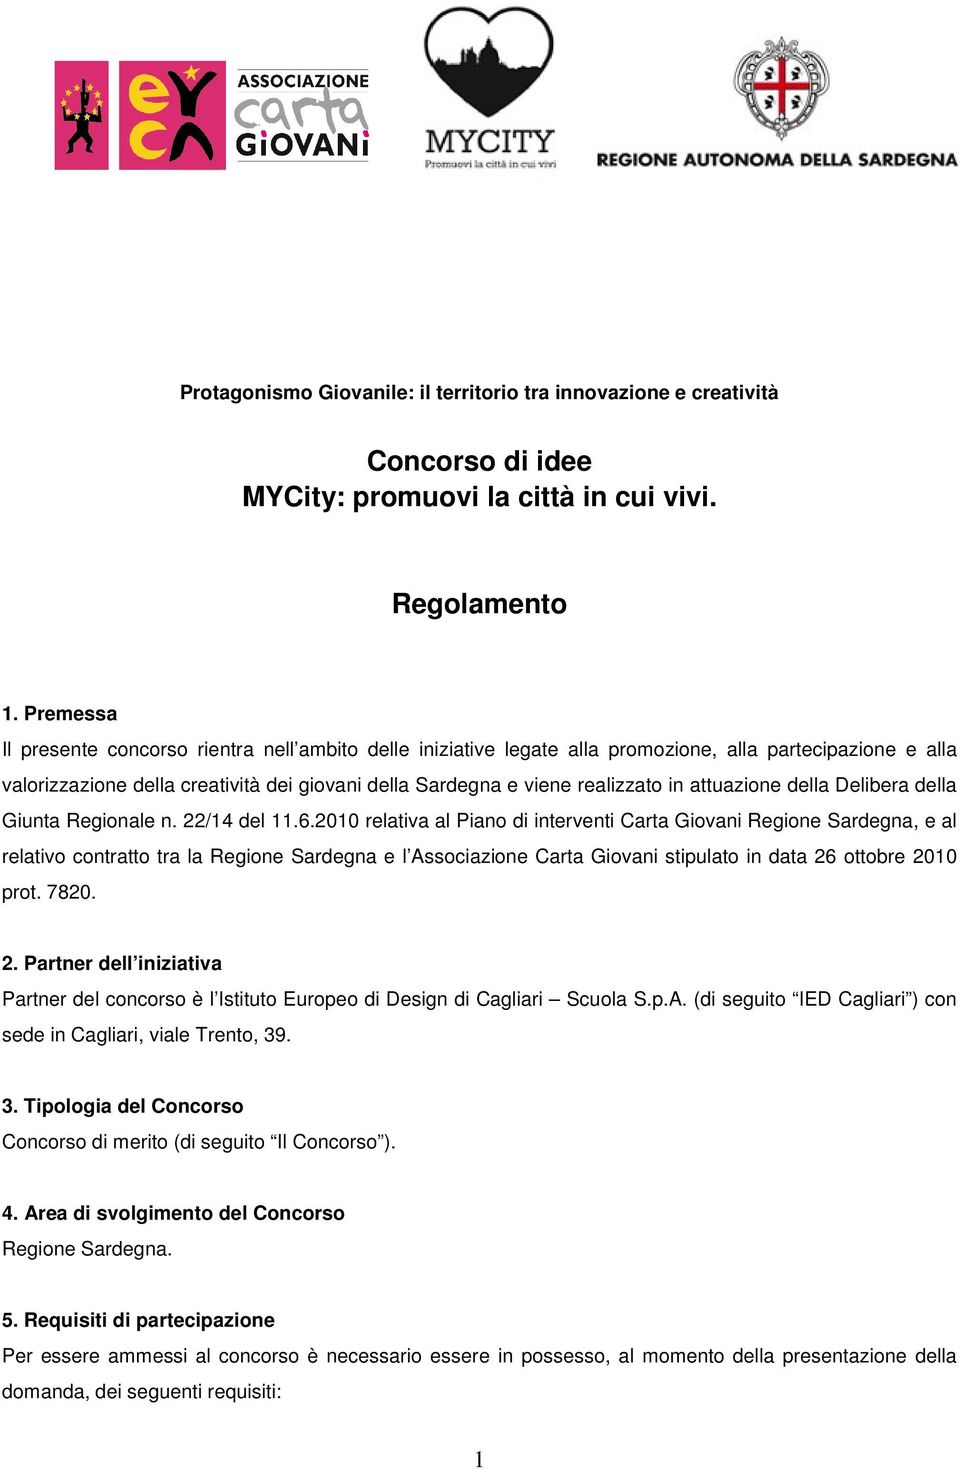 attuazione della Delibera della Giunta Regionale n. 22/14 del 11.6.